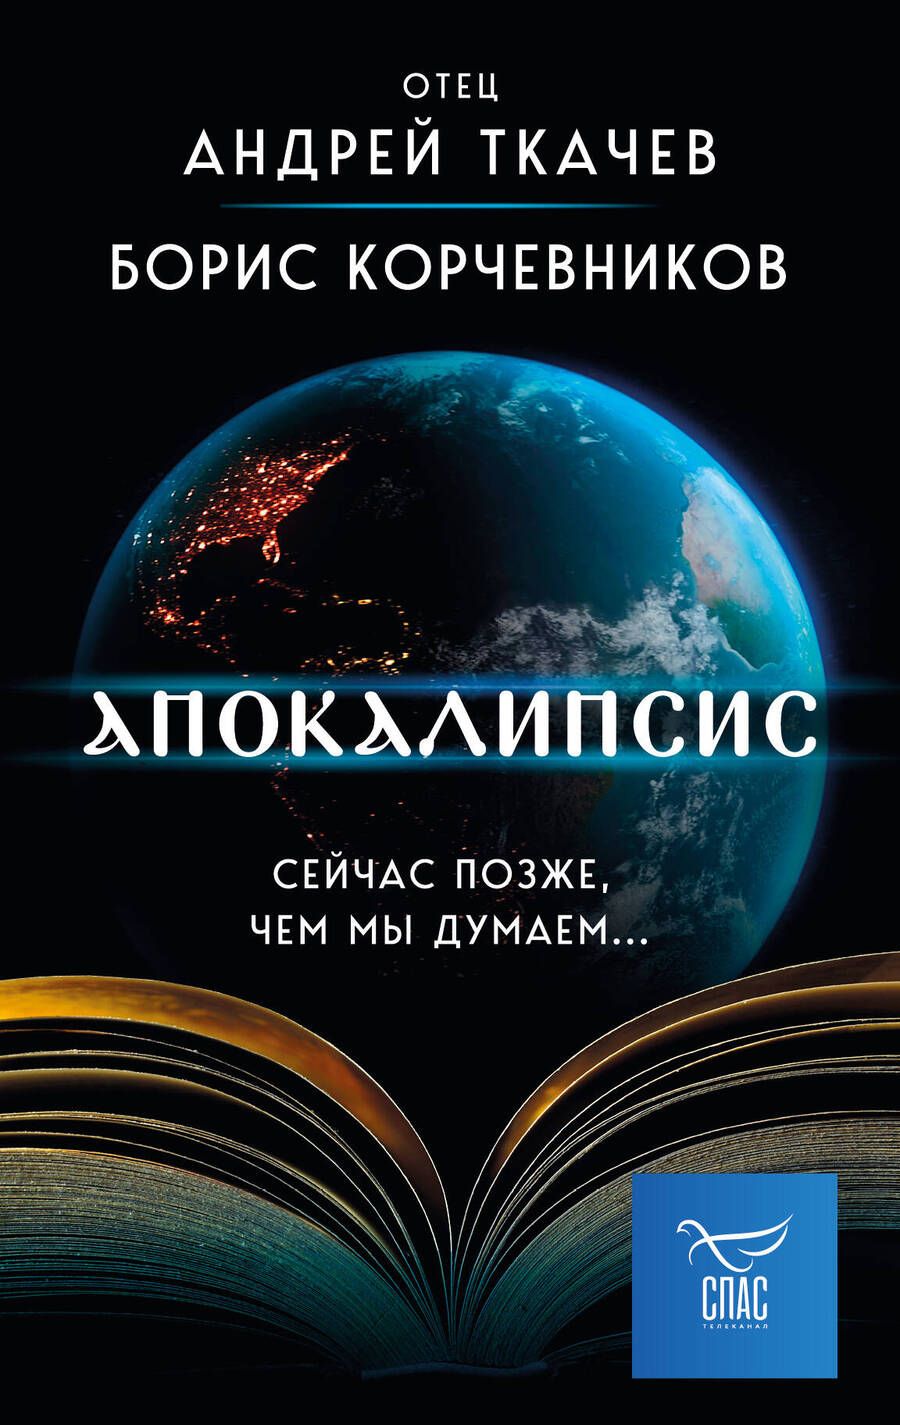 Обложка книги "Корчевников, Ткачев: Апокалипсис. Сейчас позже, чем мы думаем…"